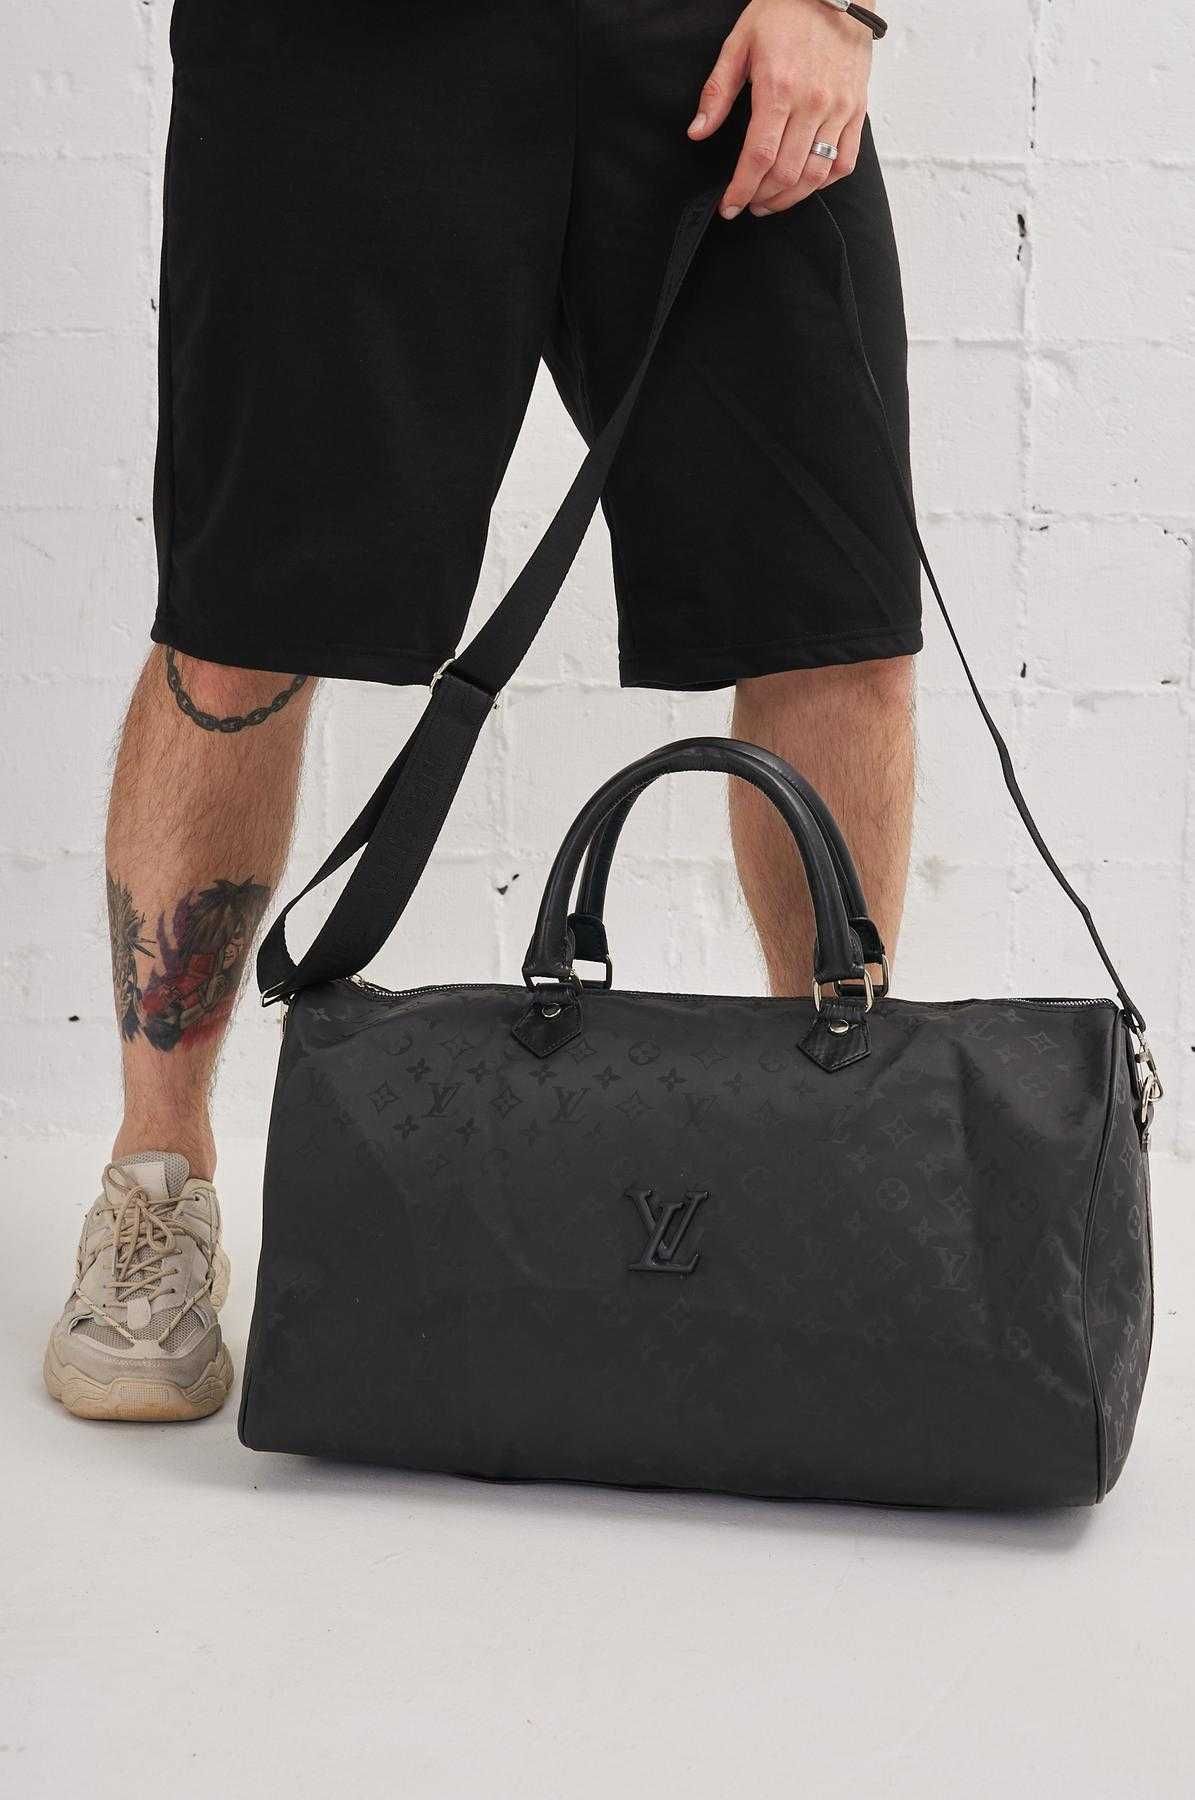 Сумка Louis Vuitton,сумка дорожная,спортивная сумка,сумка для поездок